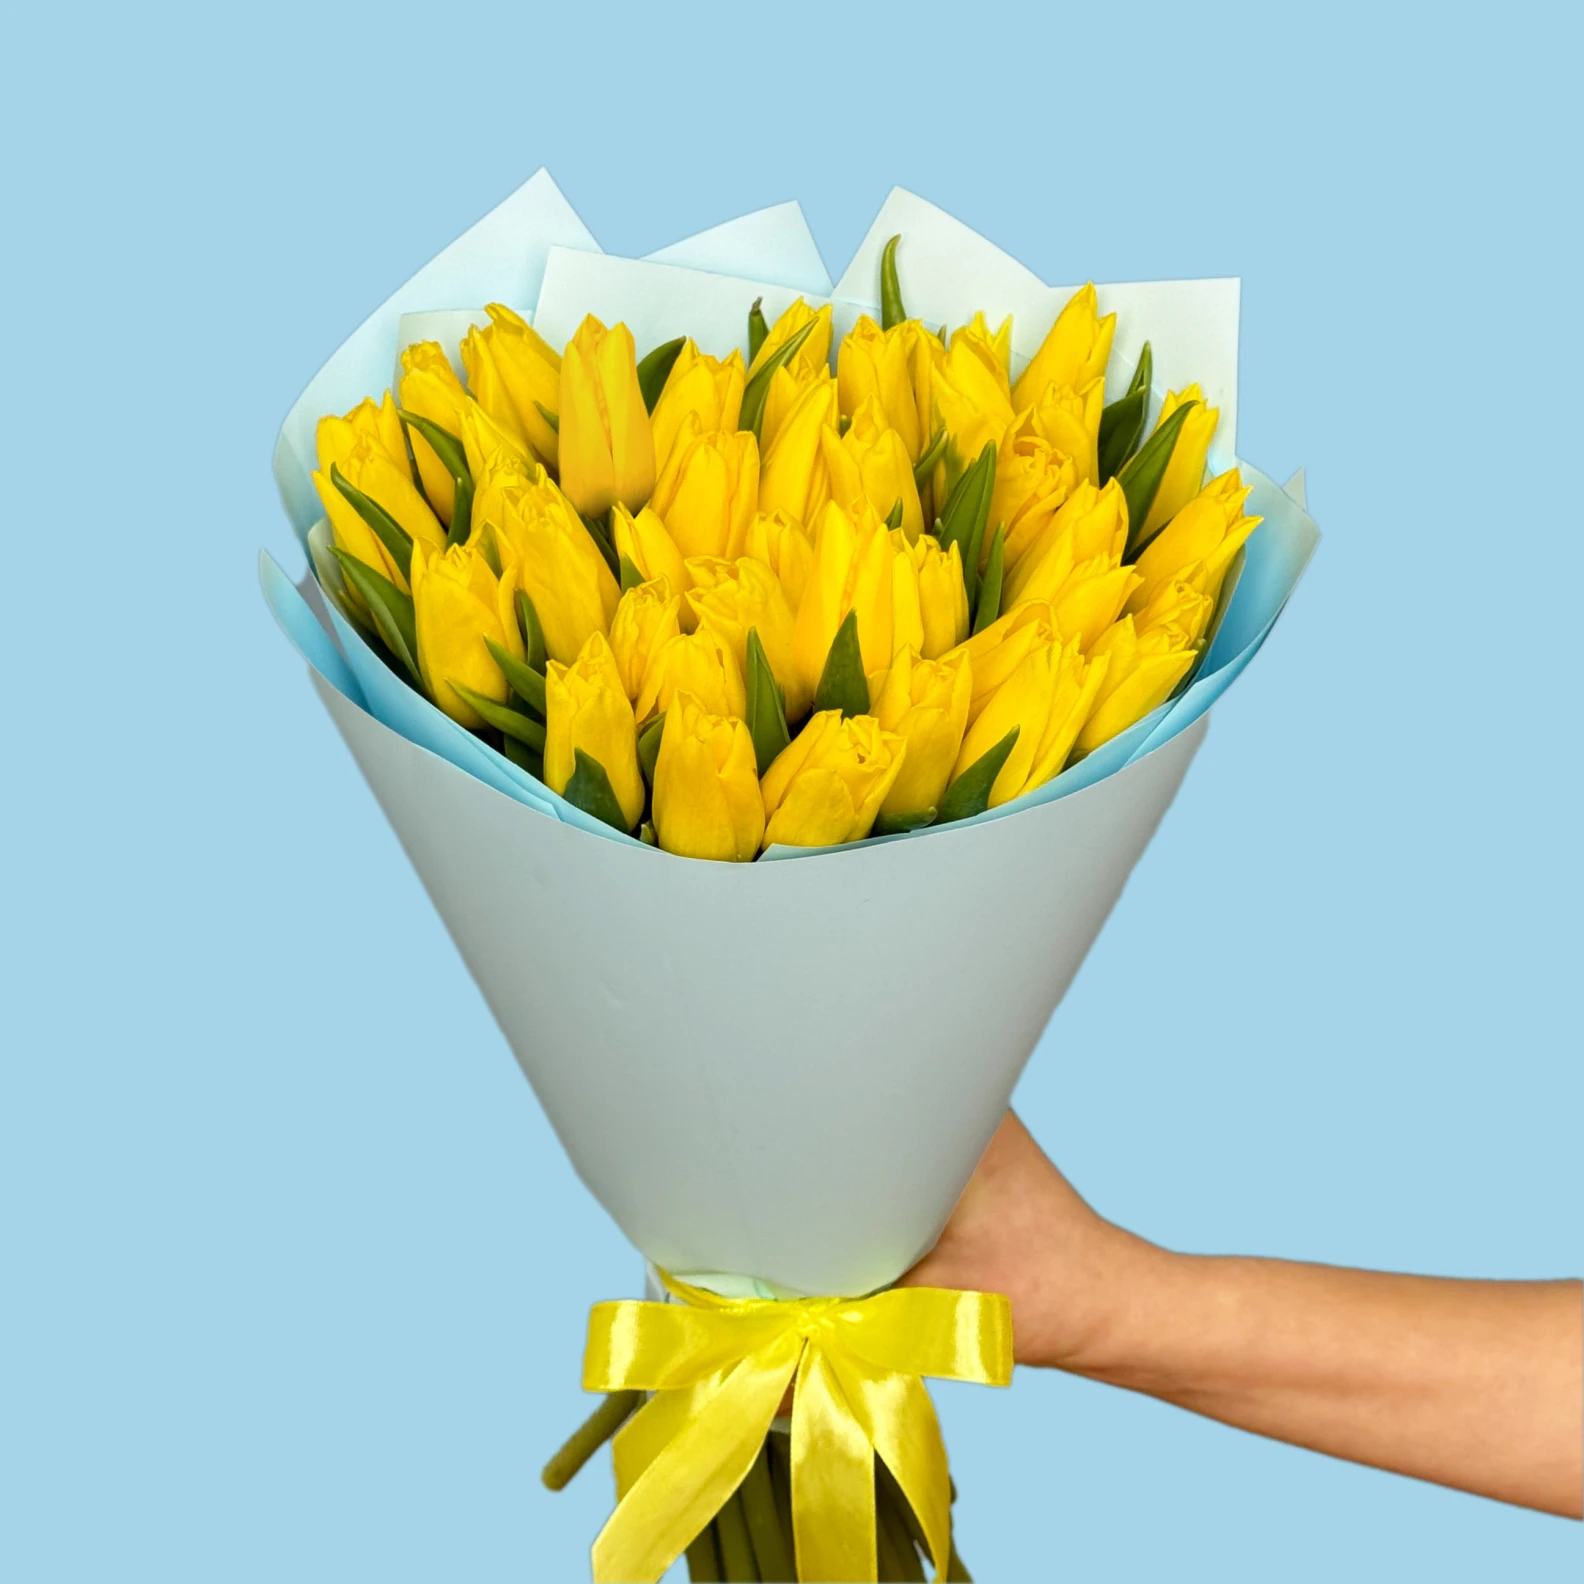 40 Yellow Tulips - image №2